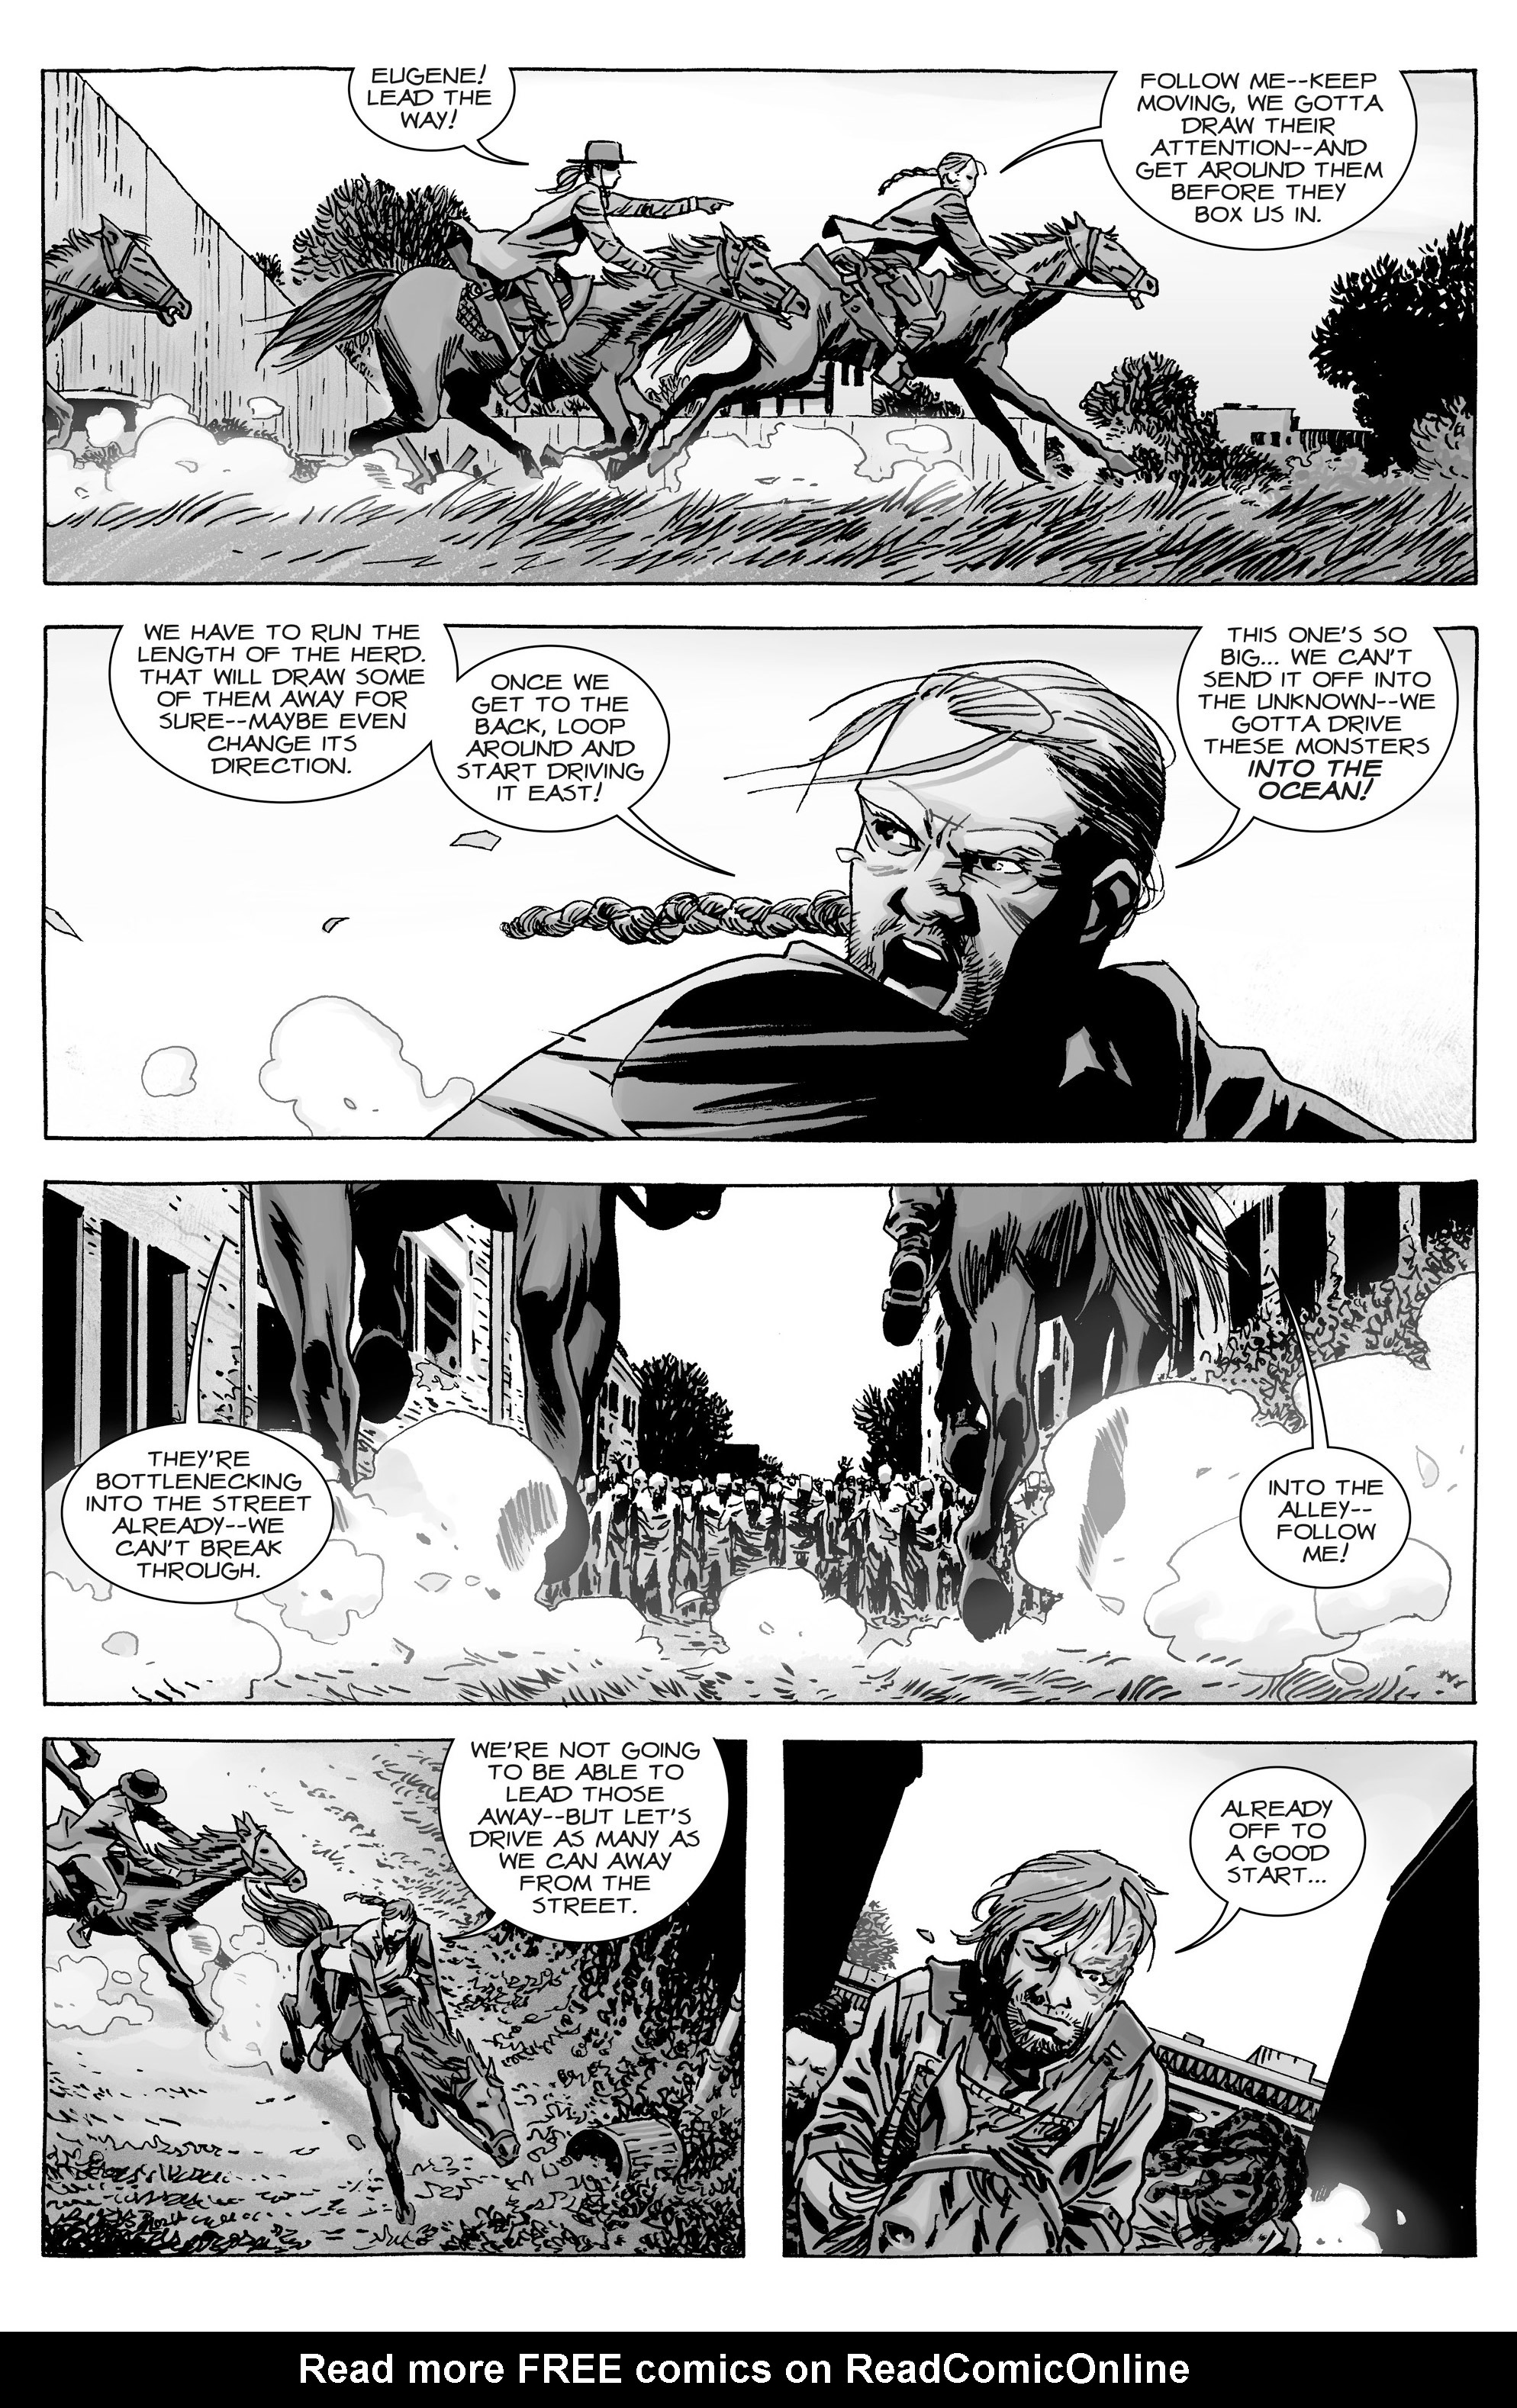 Read online The Walking Dead comic -  Issue #163 - 9